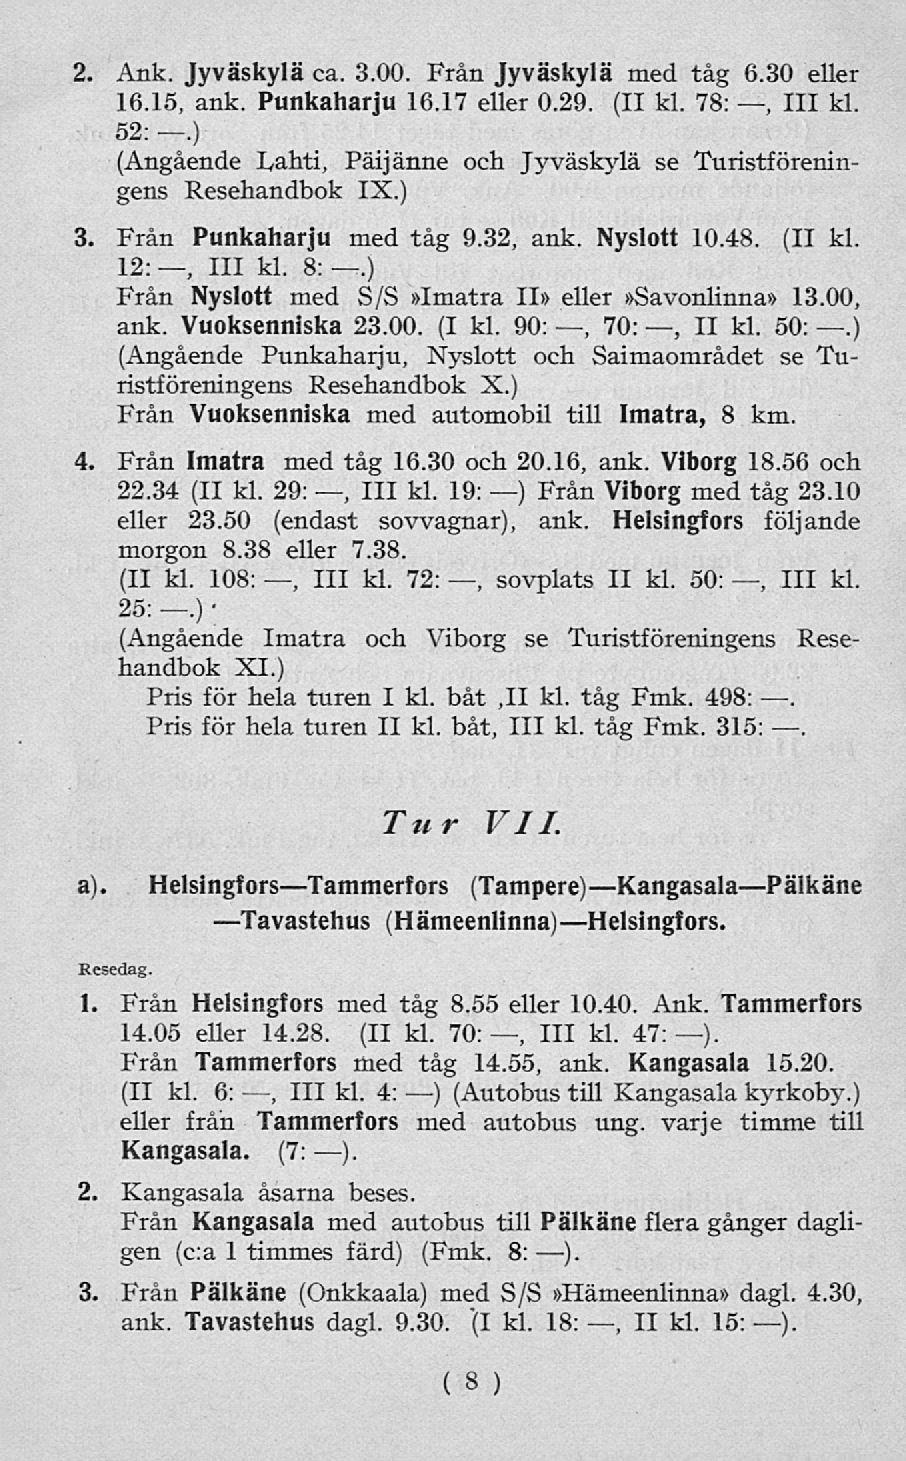 2. Ank. Jyväskylä ca. 3.00. Från Jyväskylä med tåg 6.30 eller 16.15, ank. Punkaharju 16.17 eller 0.29. (II kl. 78:, 111 kl. 52:.